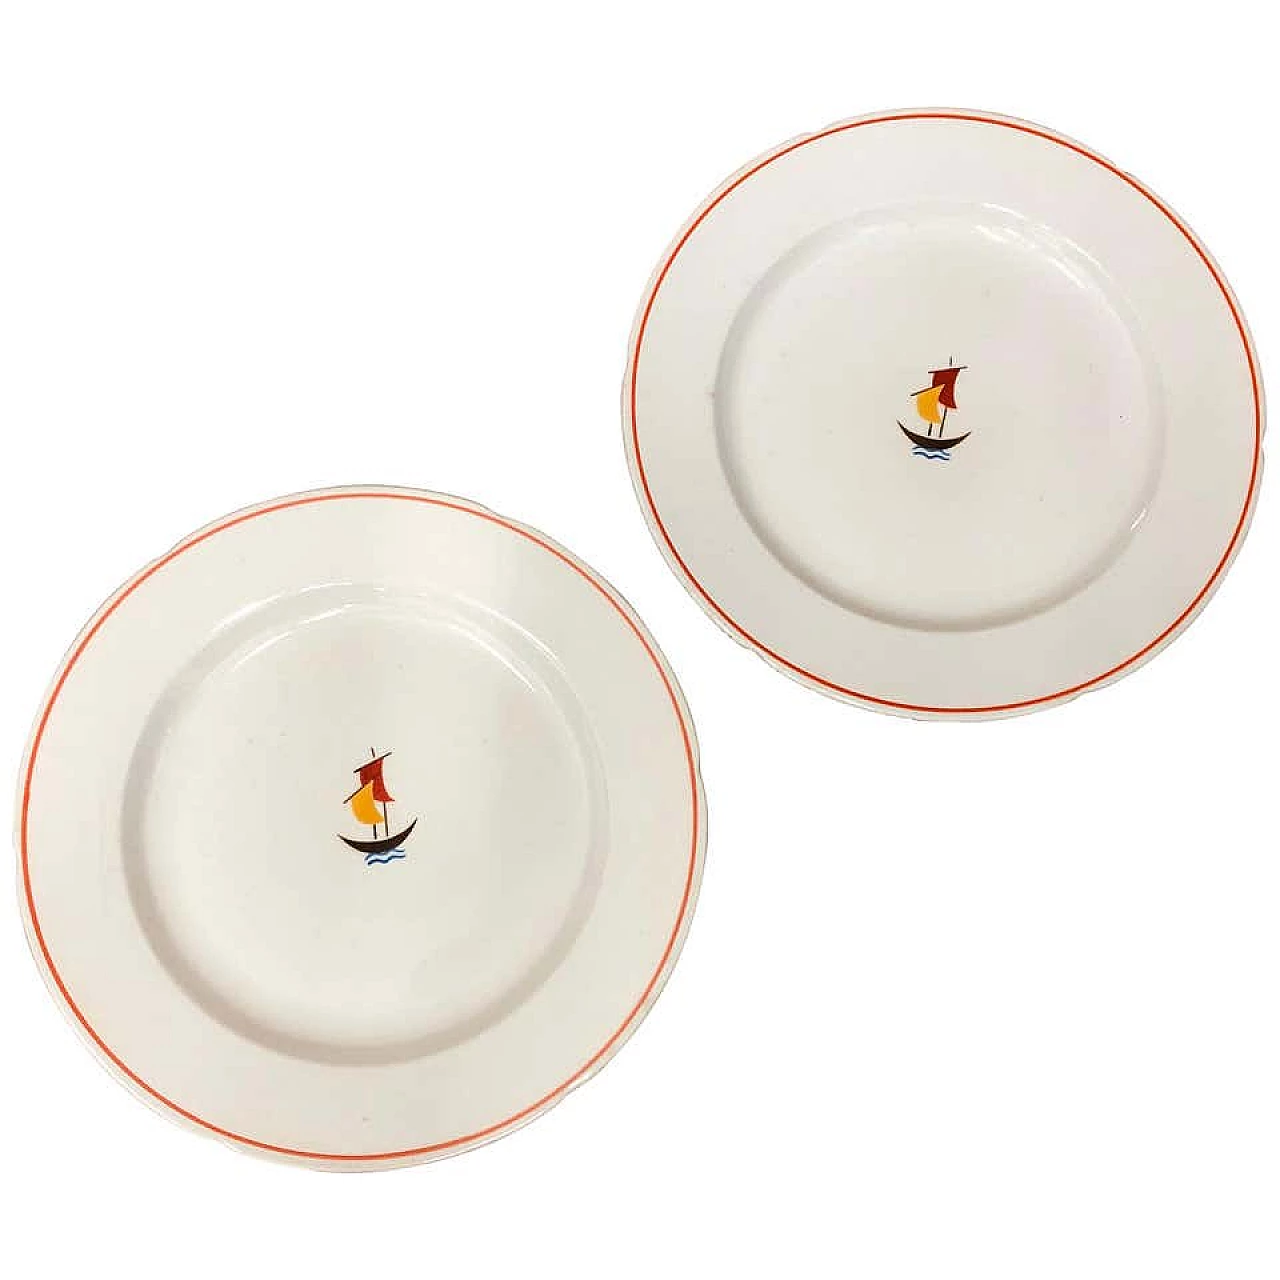 Pair of Art Deco ceramic plates by Gio Ponti for Richard Ginori, 30s 1172477